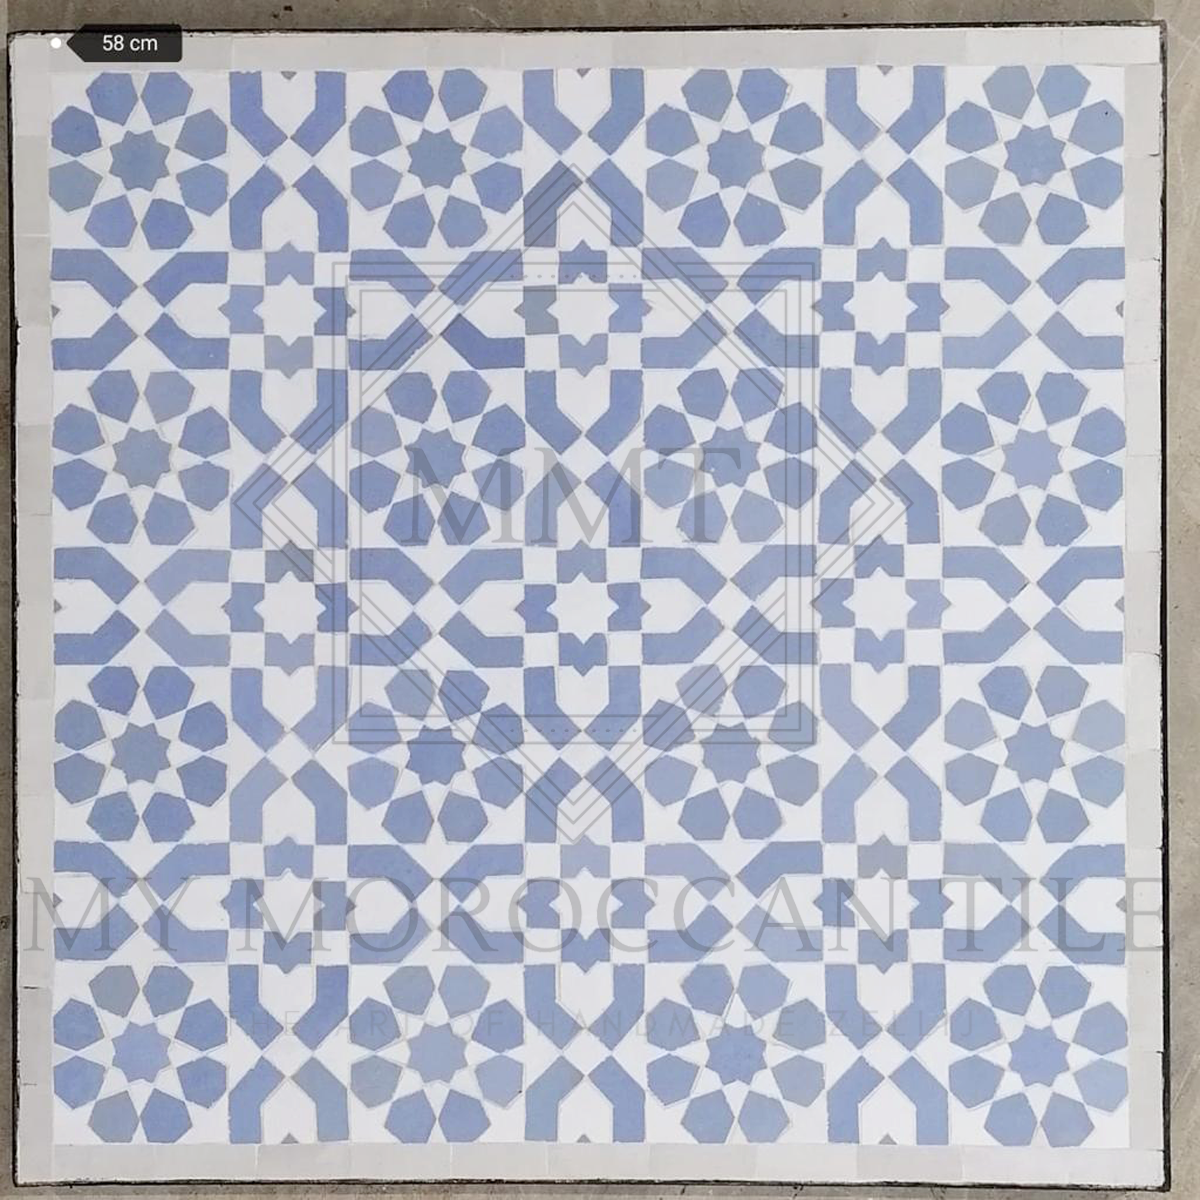 Table en mosaïque marocaine faite à la main 2108-20